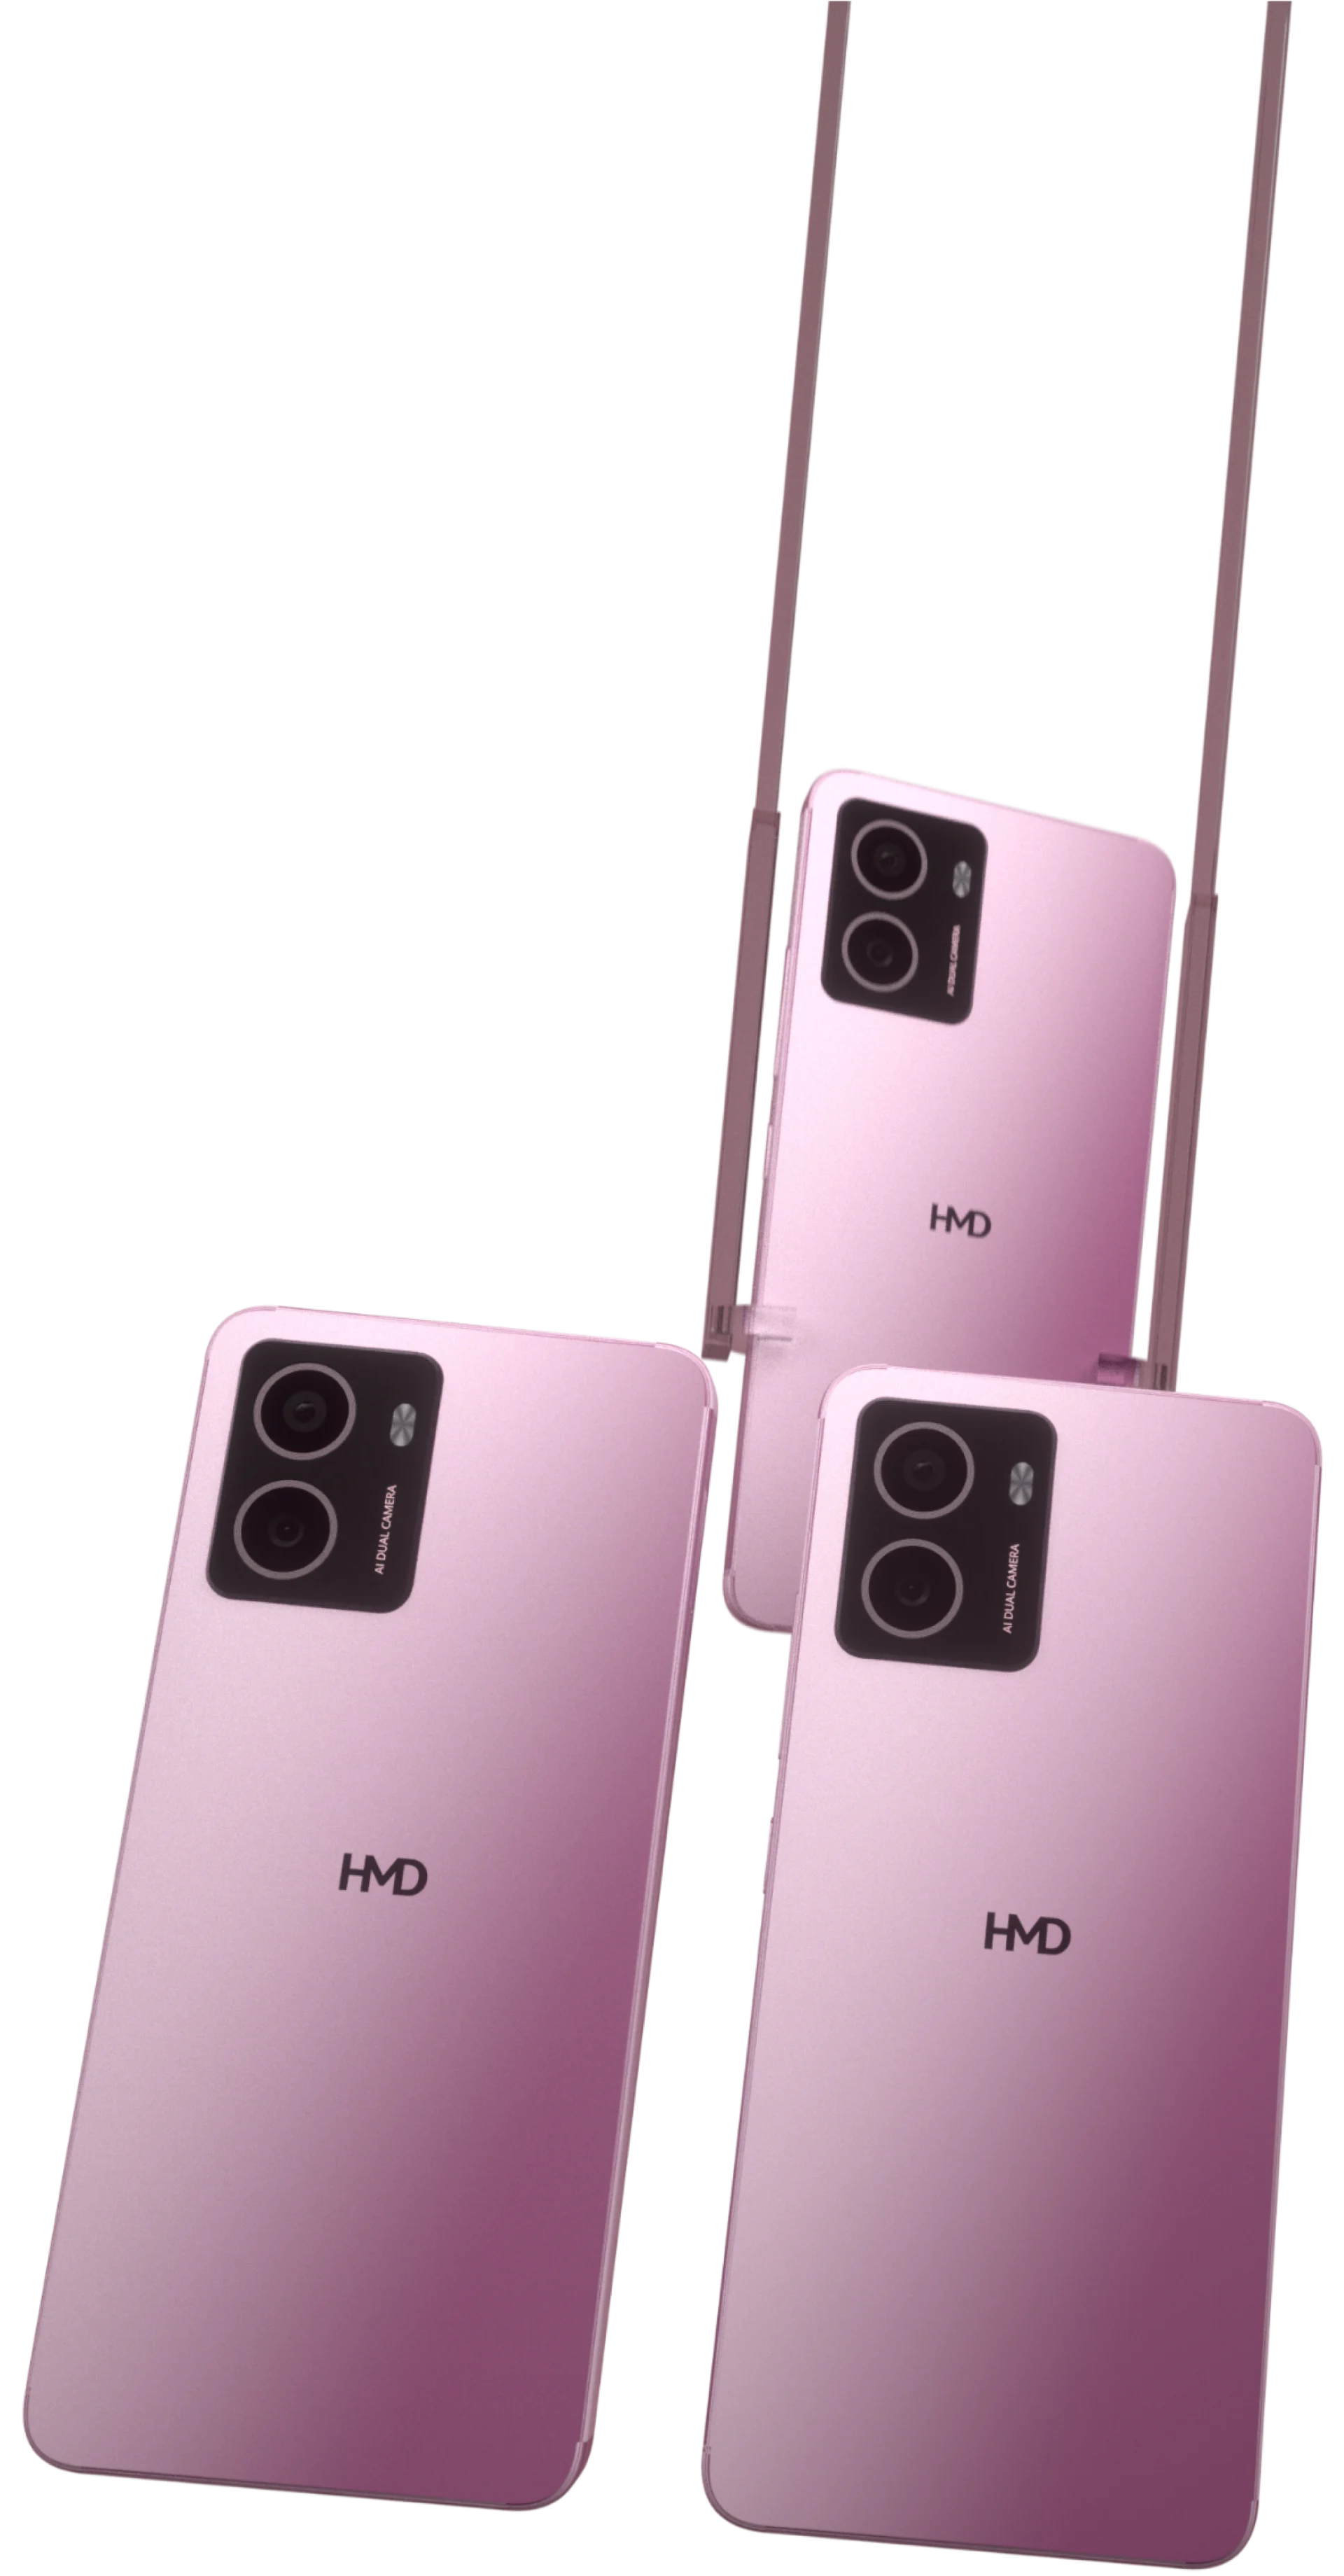 HMD Pulse smartphones in Dreamy Pink